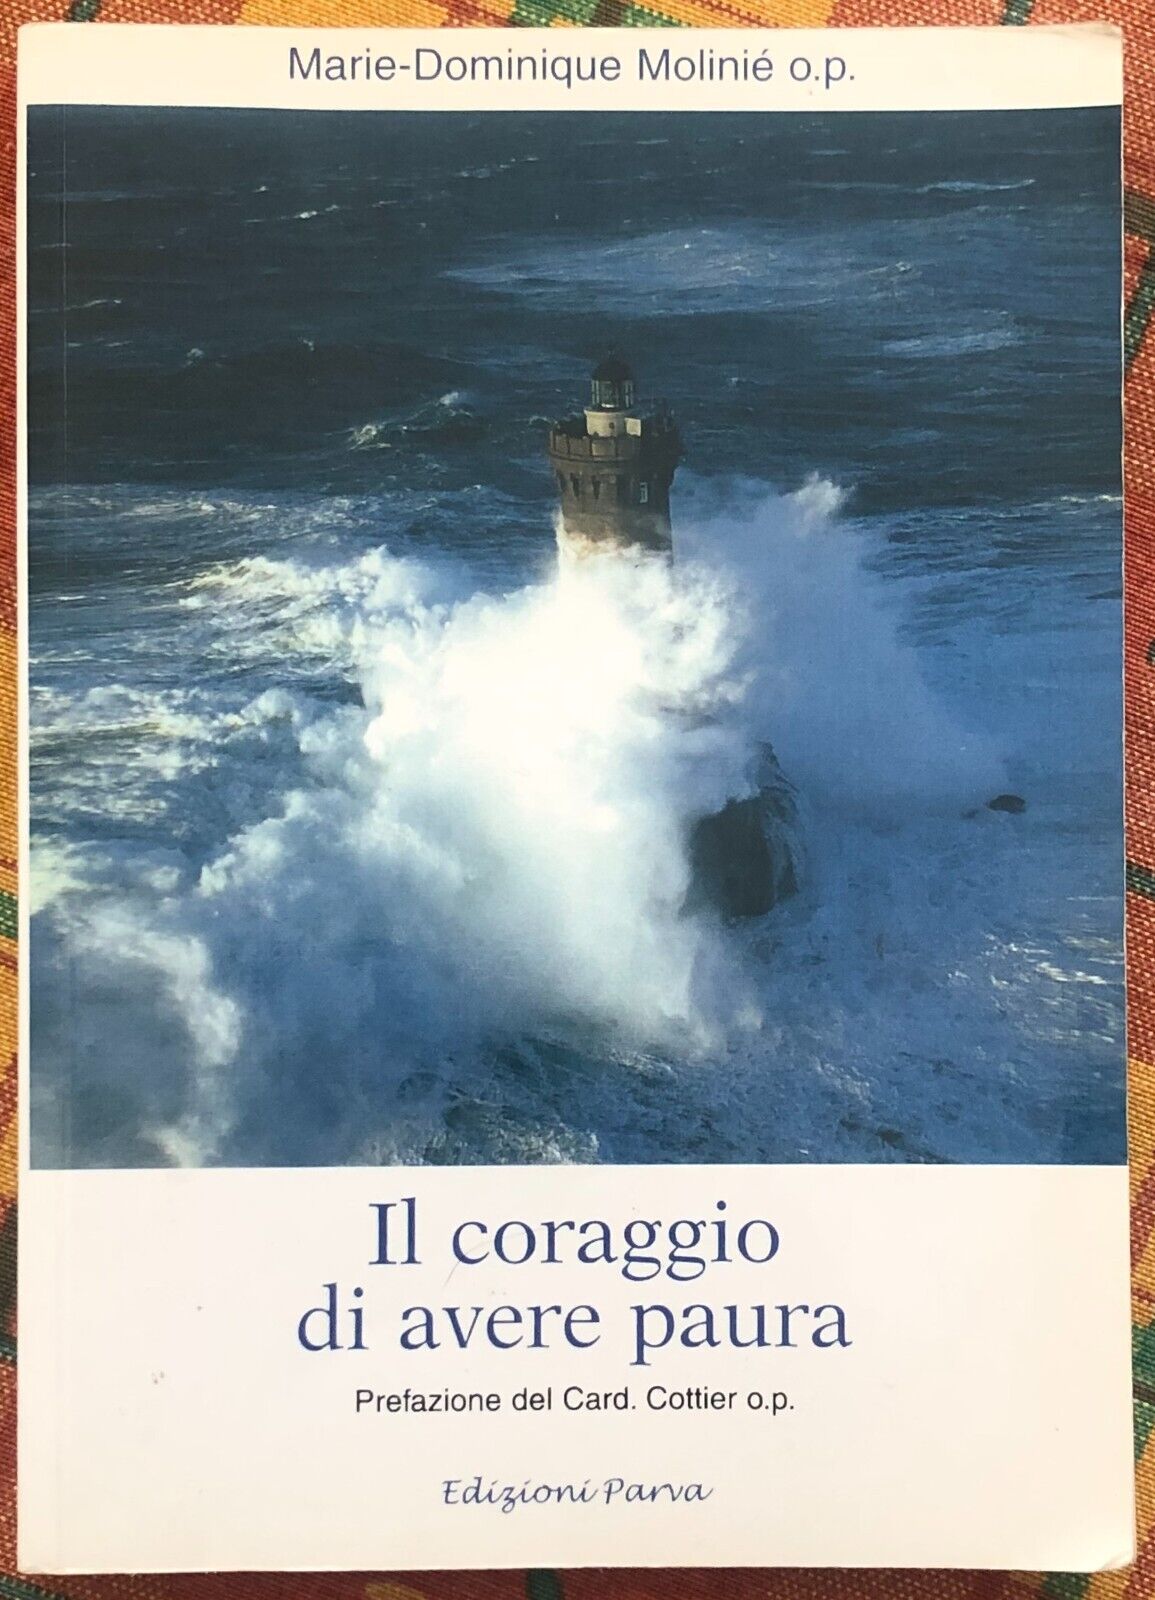  Il coraggio di avere paura di Marie-dominique Molini?, 2006, Edizioni Parva